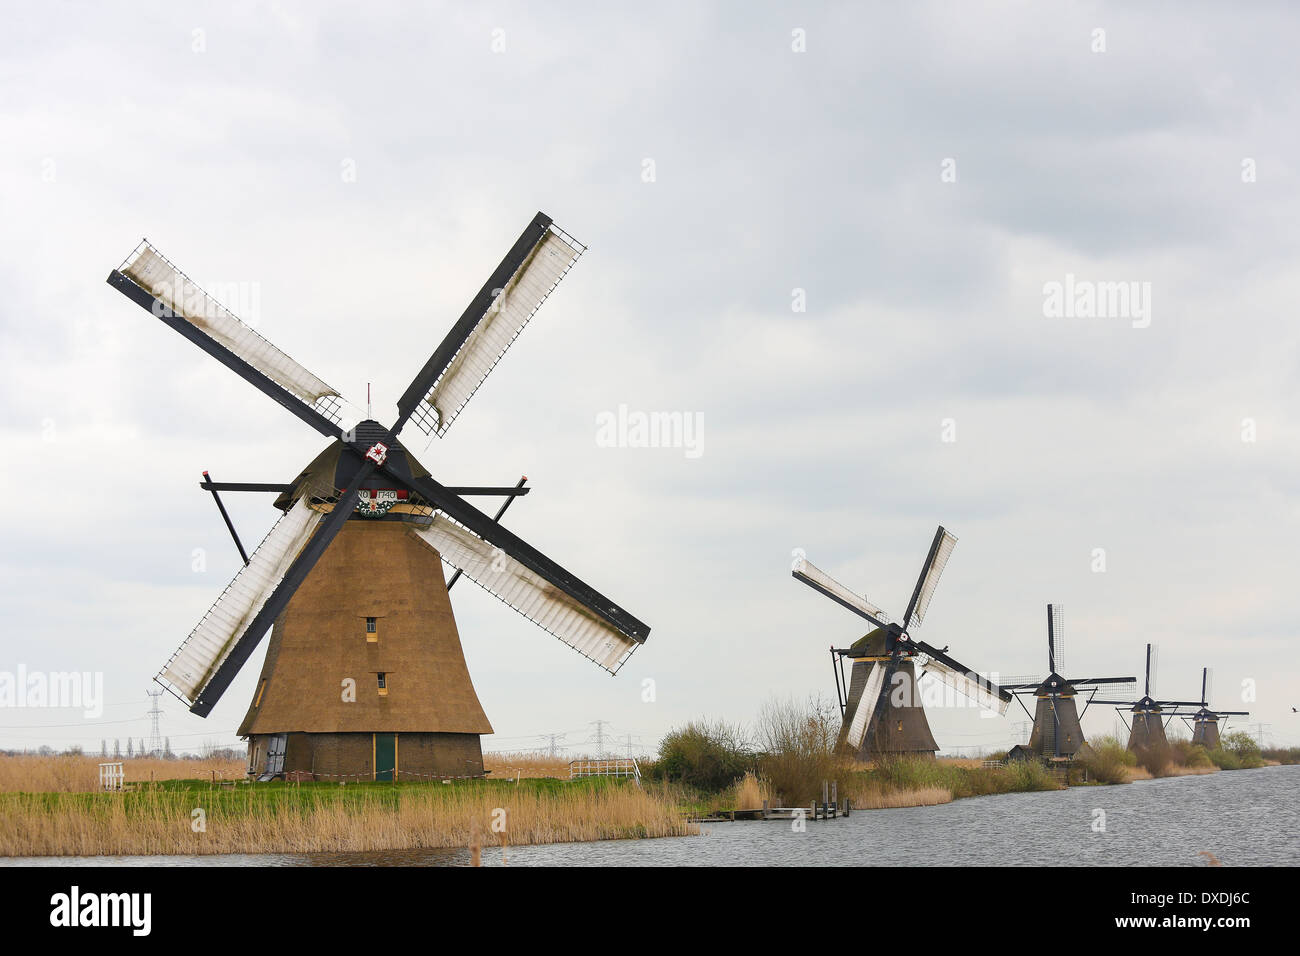 Il 19 mulini a vento di Kinderdijk sono uno dei più noti olandese siti turistici. Foto Stock